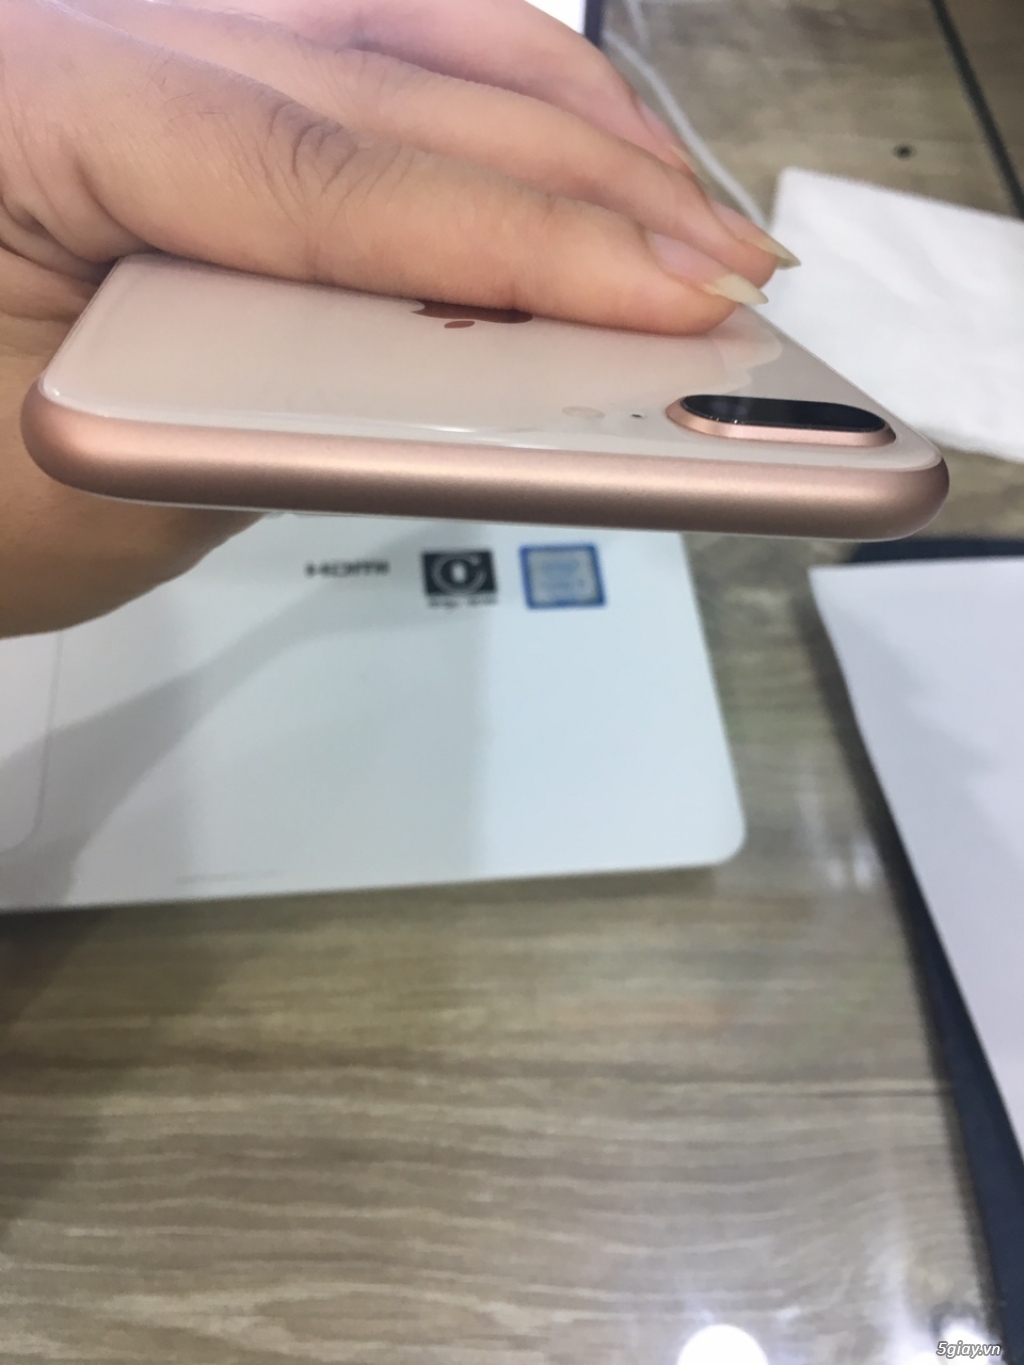 iphone 8plus 64gb vàng hồng đẹp lung linh zin như mới bảo hành - 3